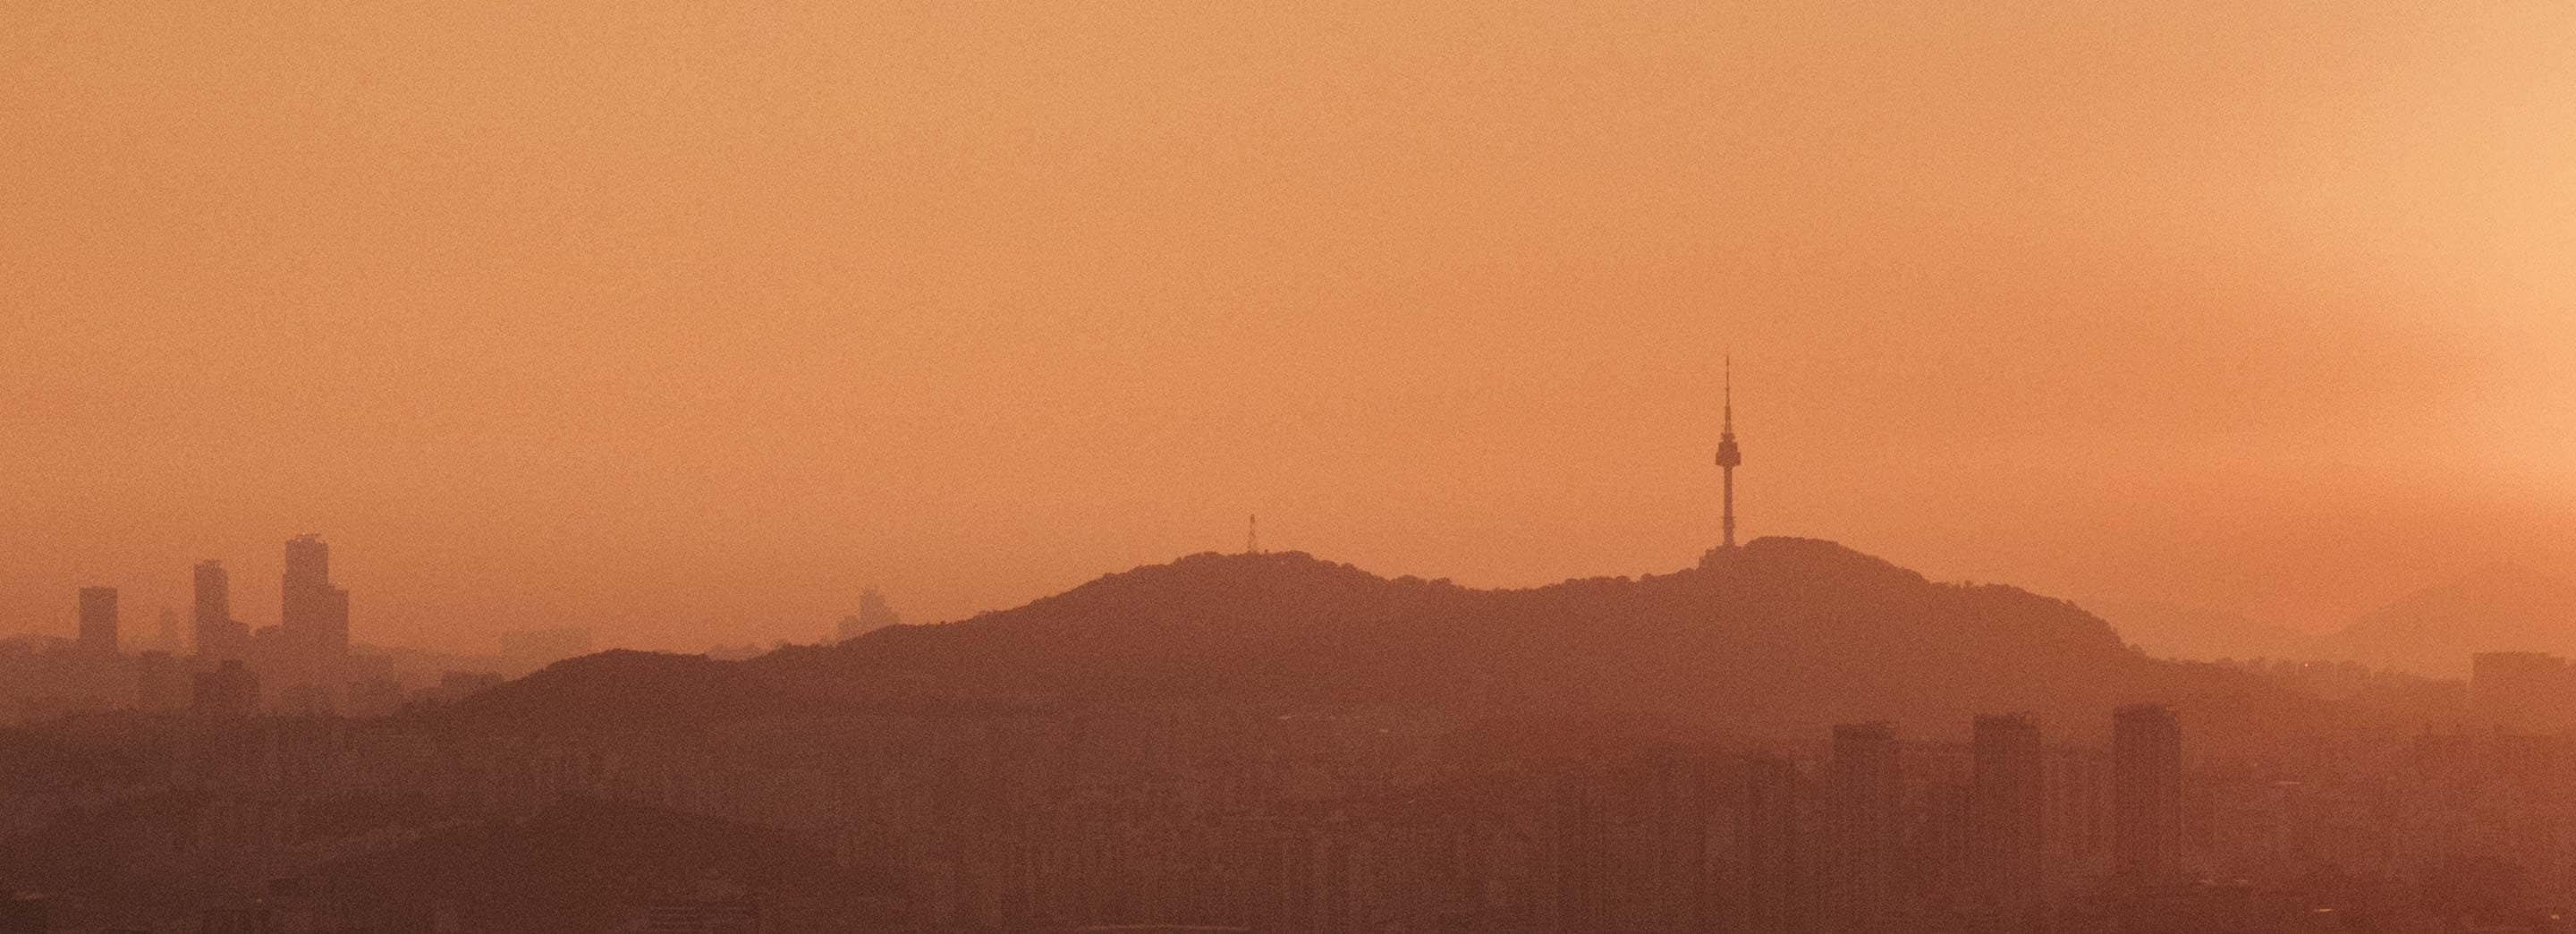 The sun setting on a Seoul skyline.